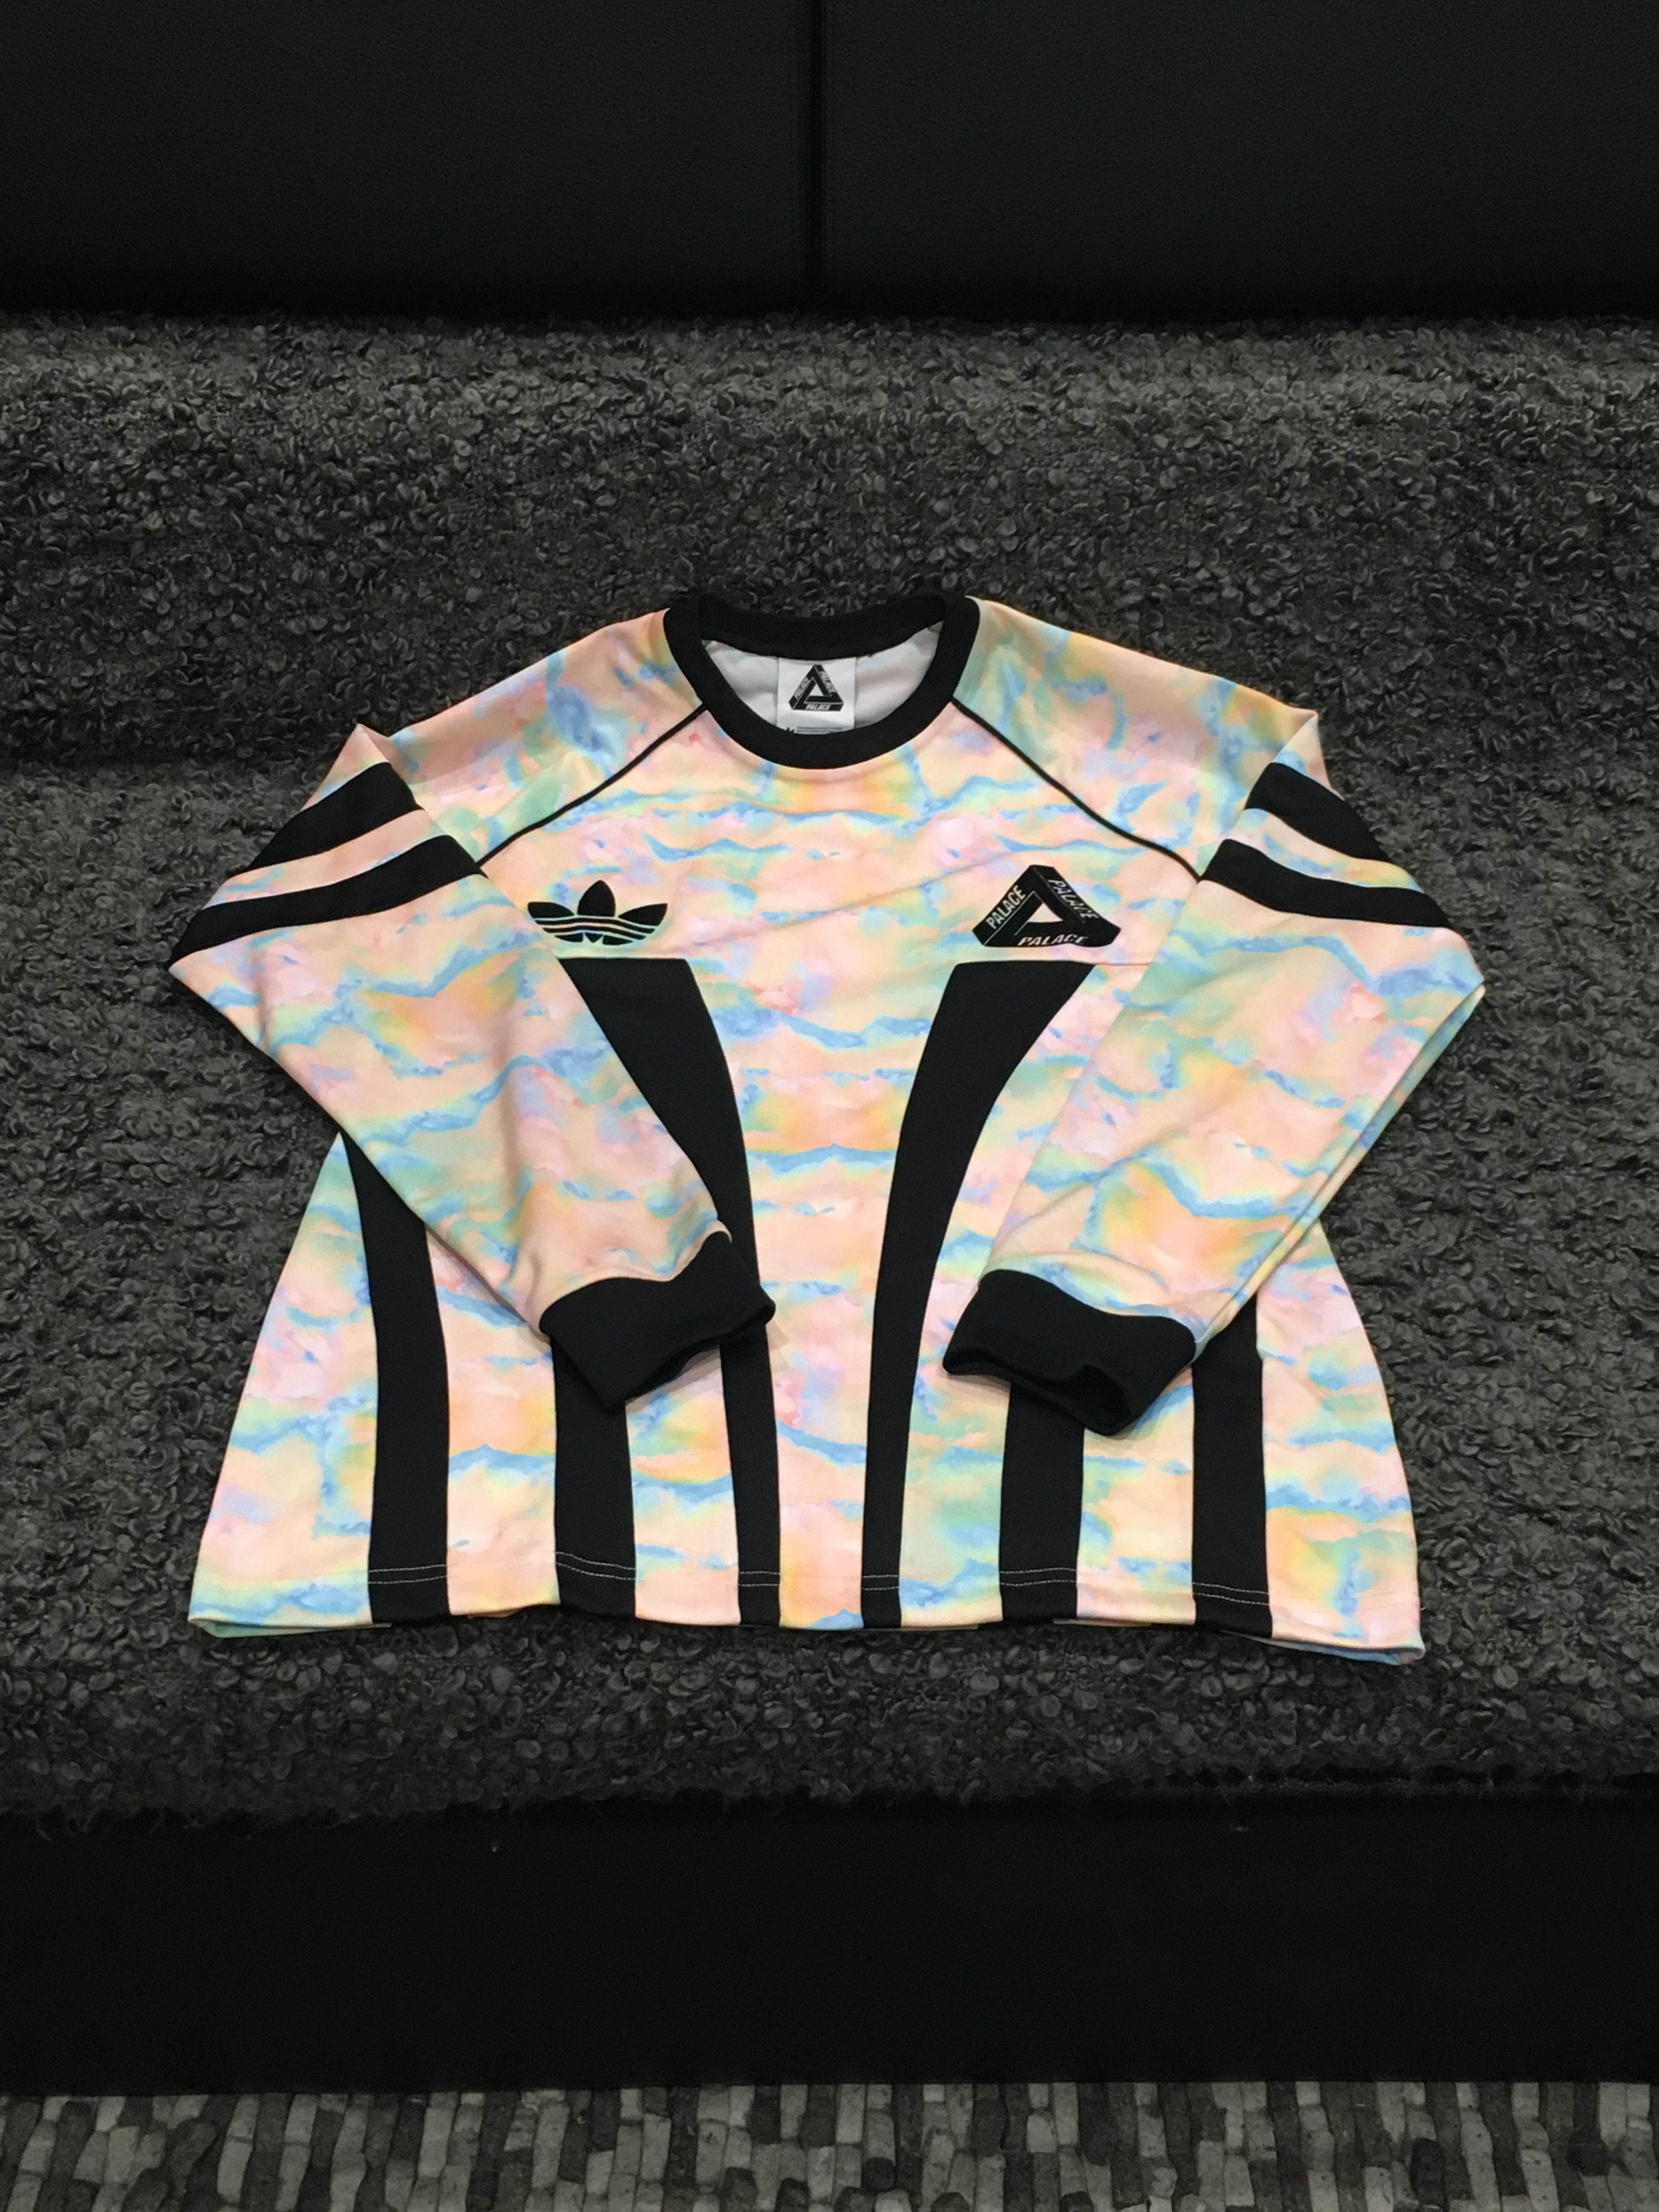 Adidas Rainbow Marbled Goalie Jersey Size US L / EU 52-54 / 3 - 5 Thumbnail